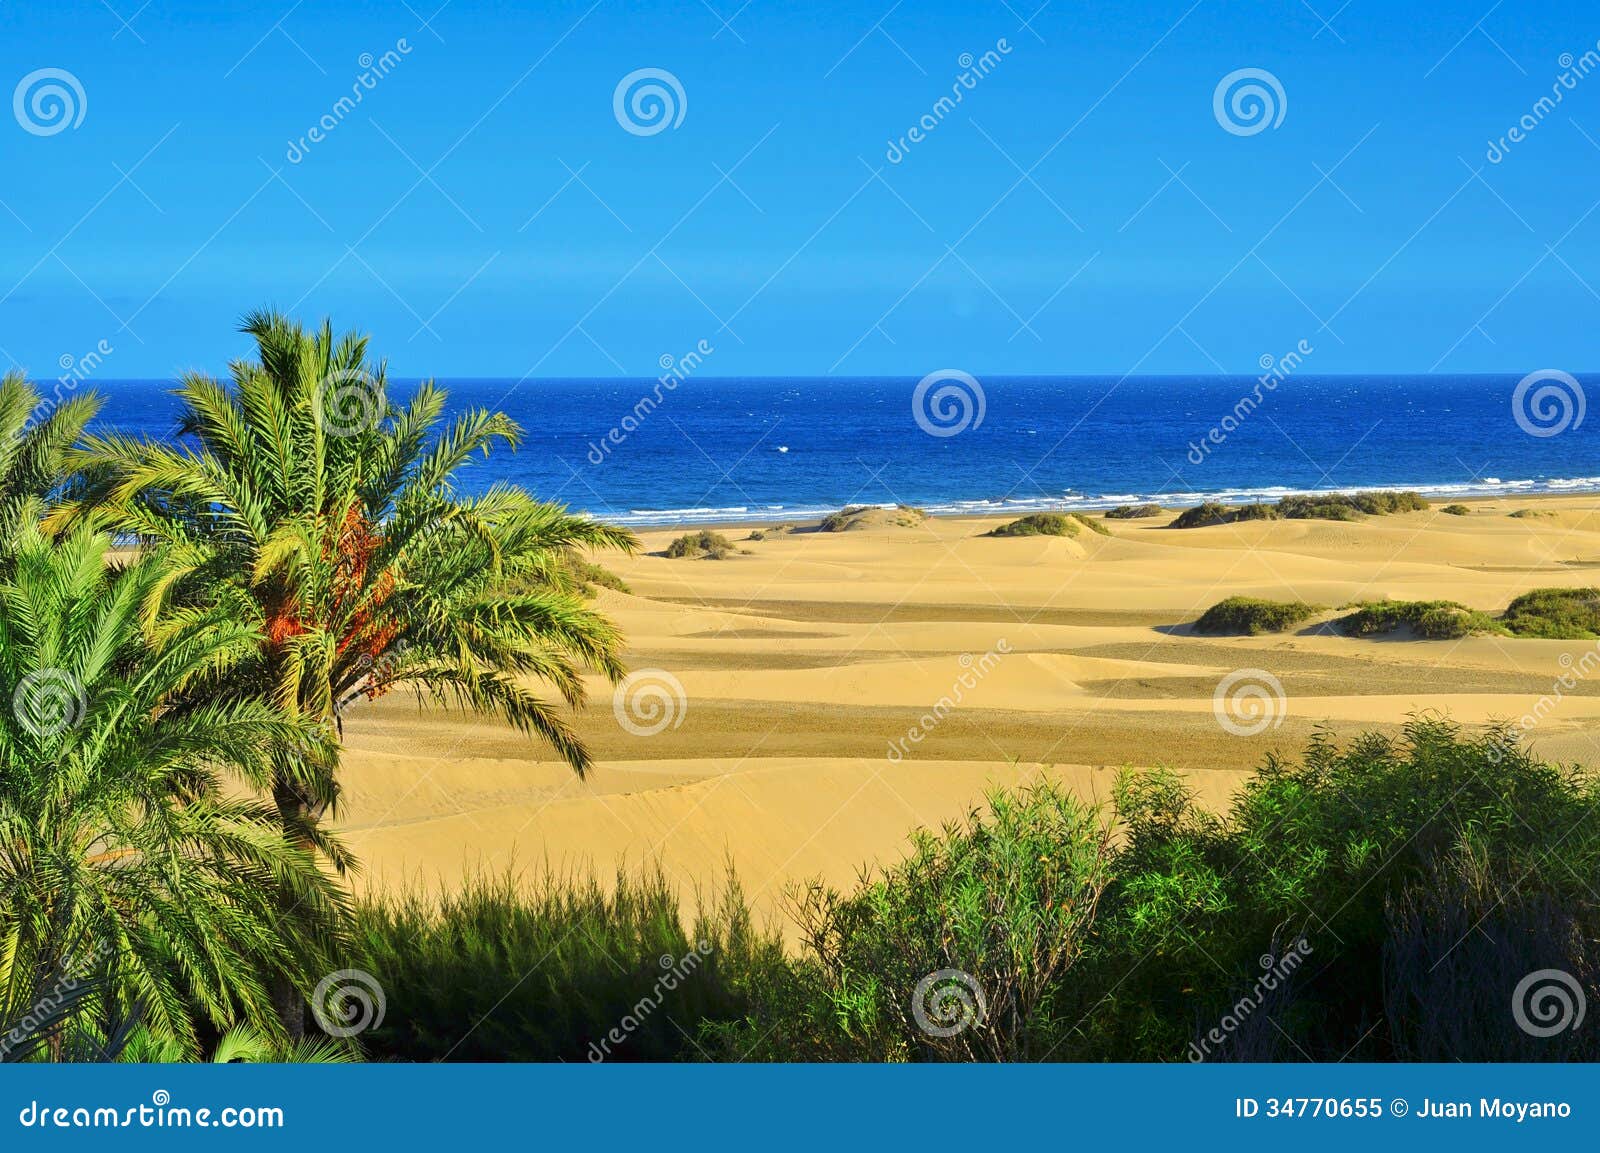 natural reserve of dunes of maspalomas, in gran canaria, spain